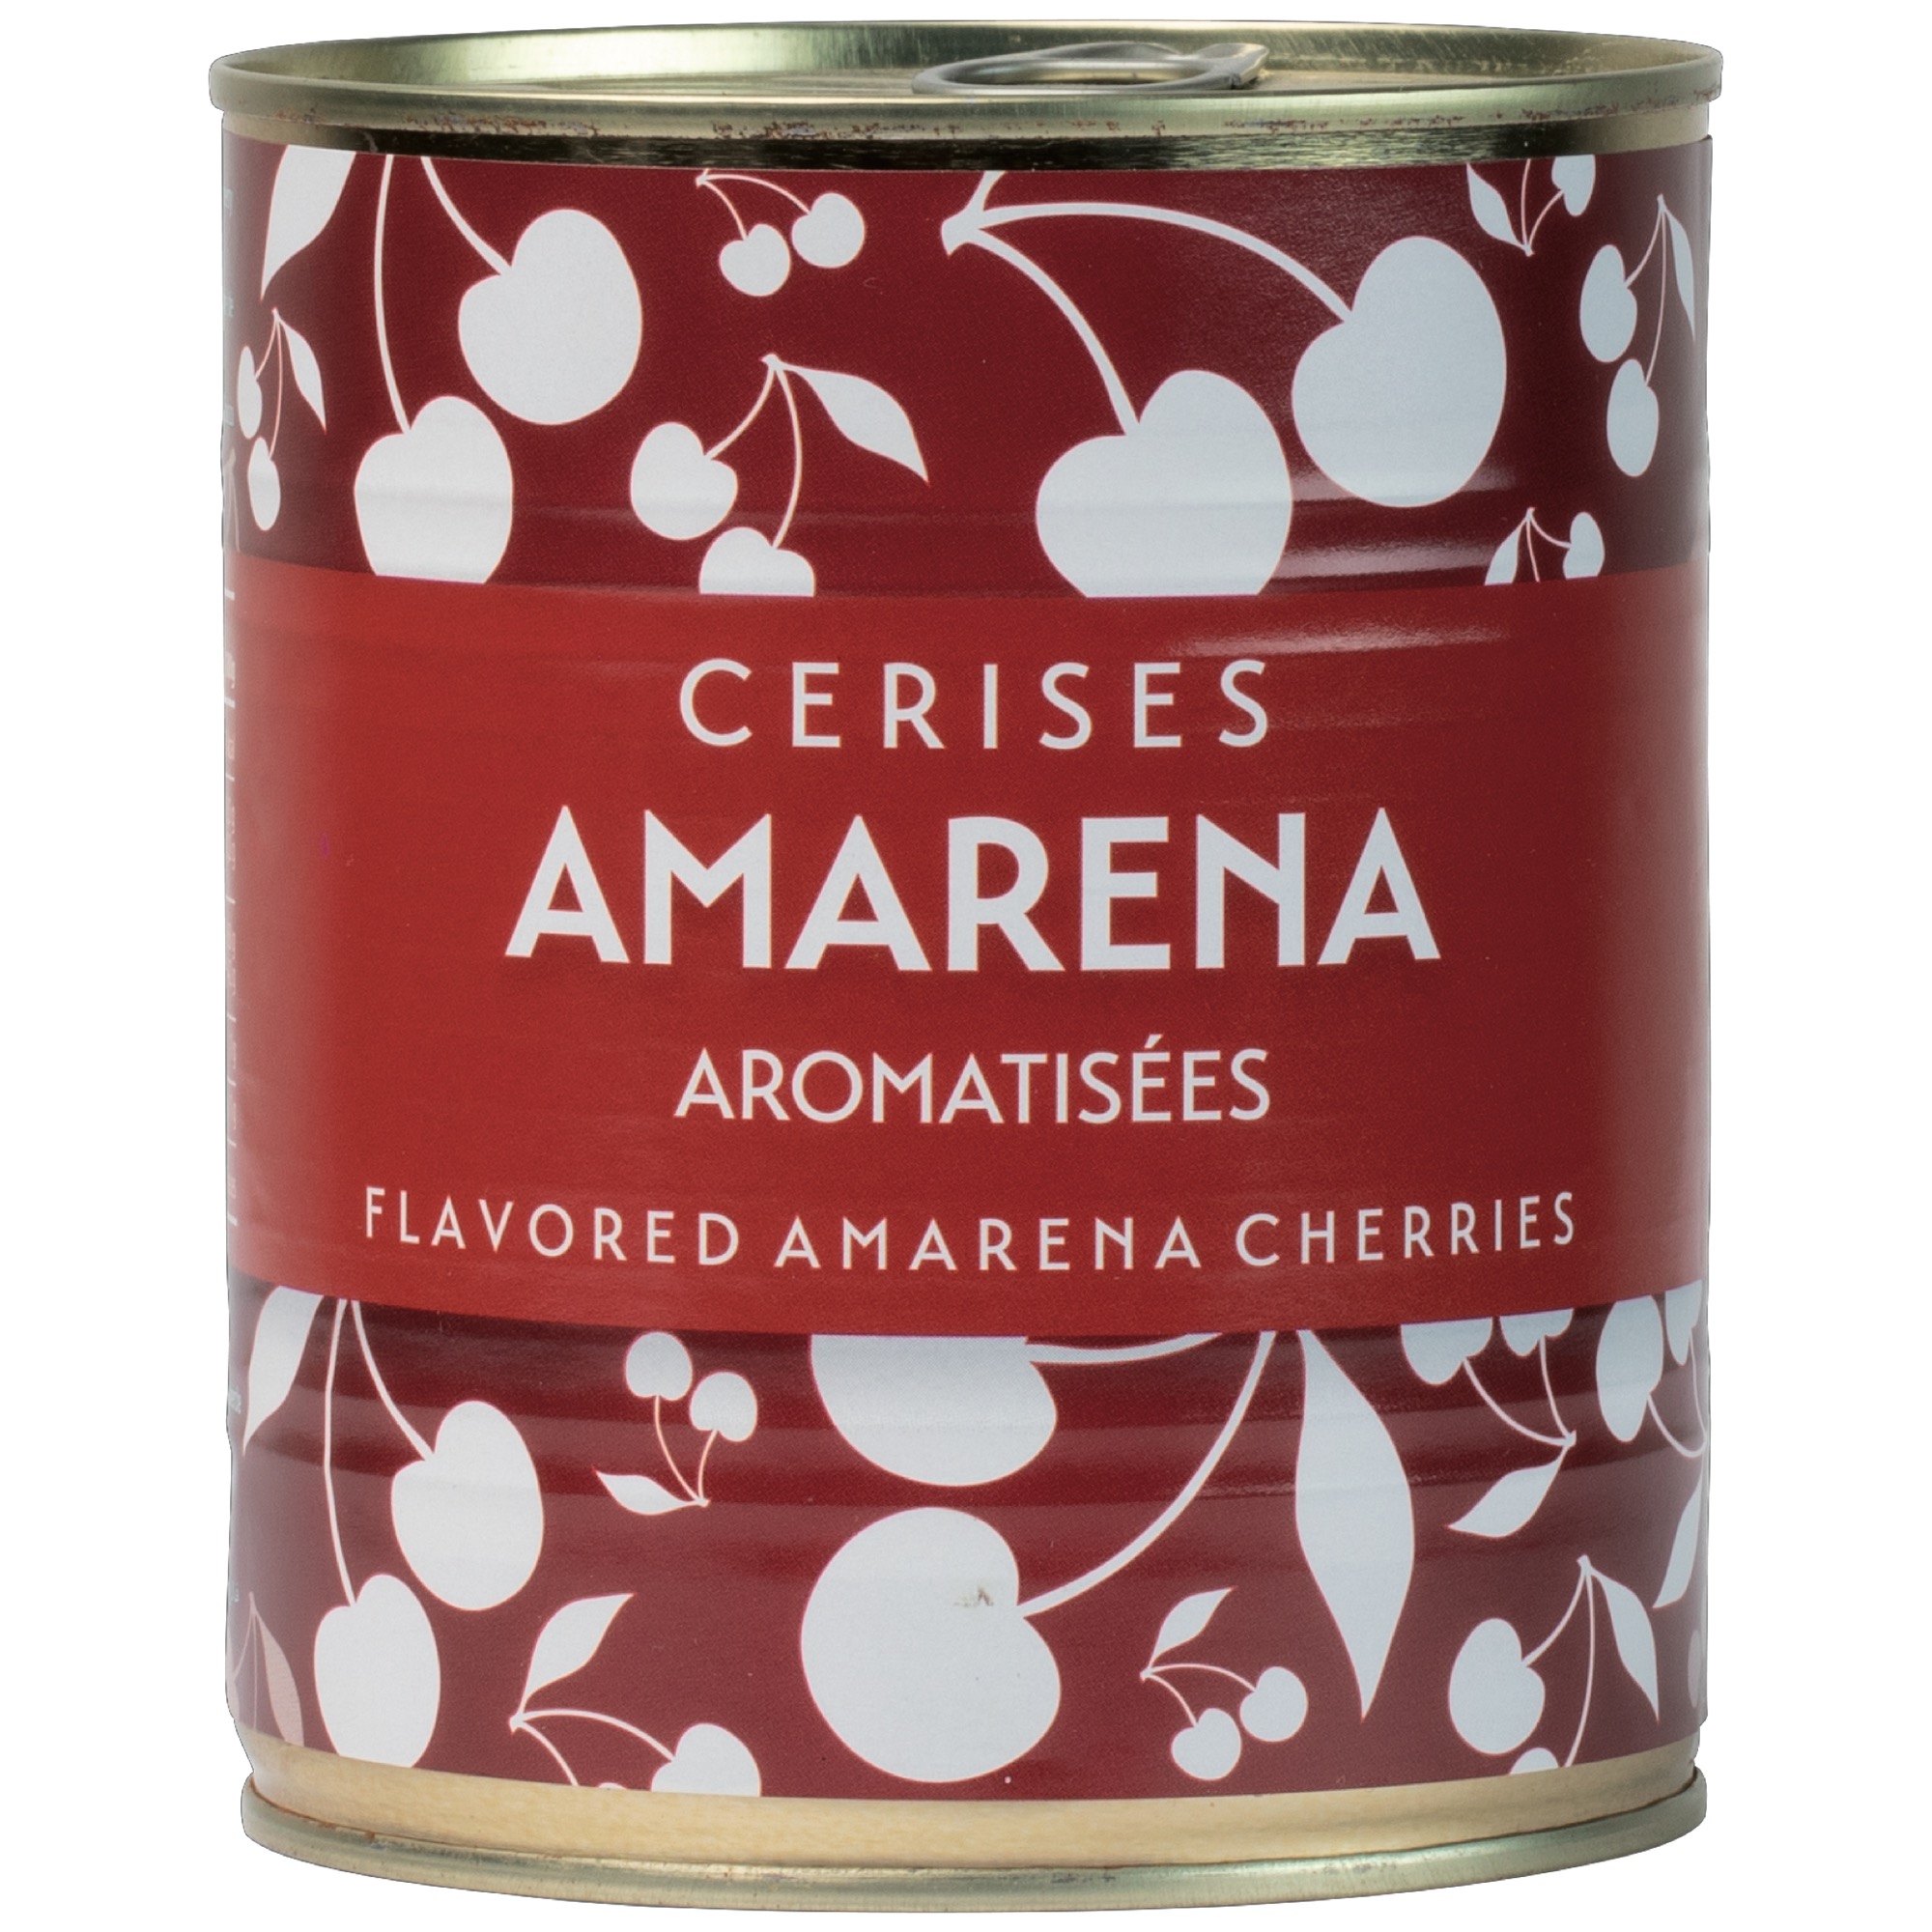 Cerises Amarena čerešne 1kg